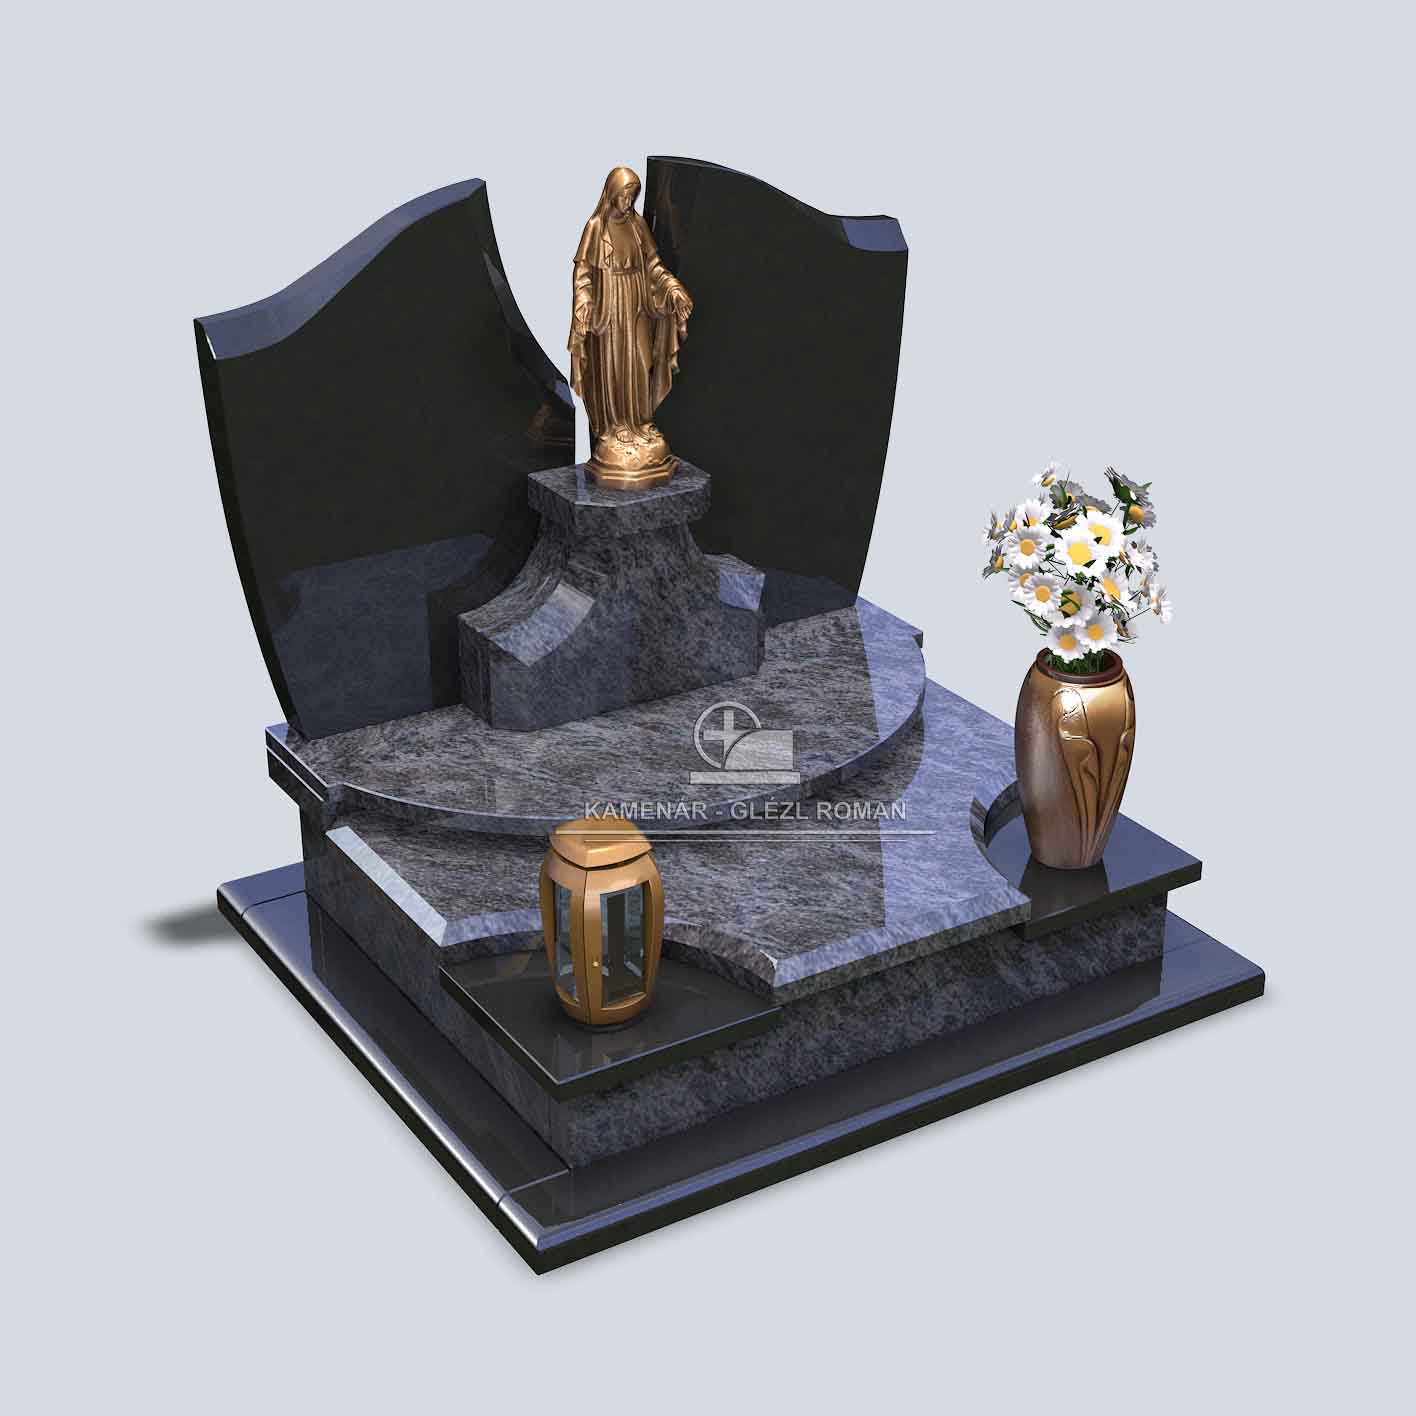 Urnový pomník z tmavomodrej žuly a z čiernej nápisnej tabule s bronzovou sochou, svietnikom a vázou s kvetmi